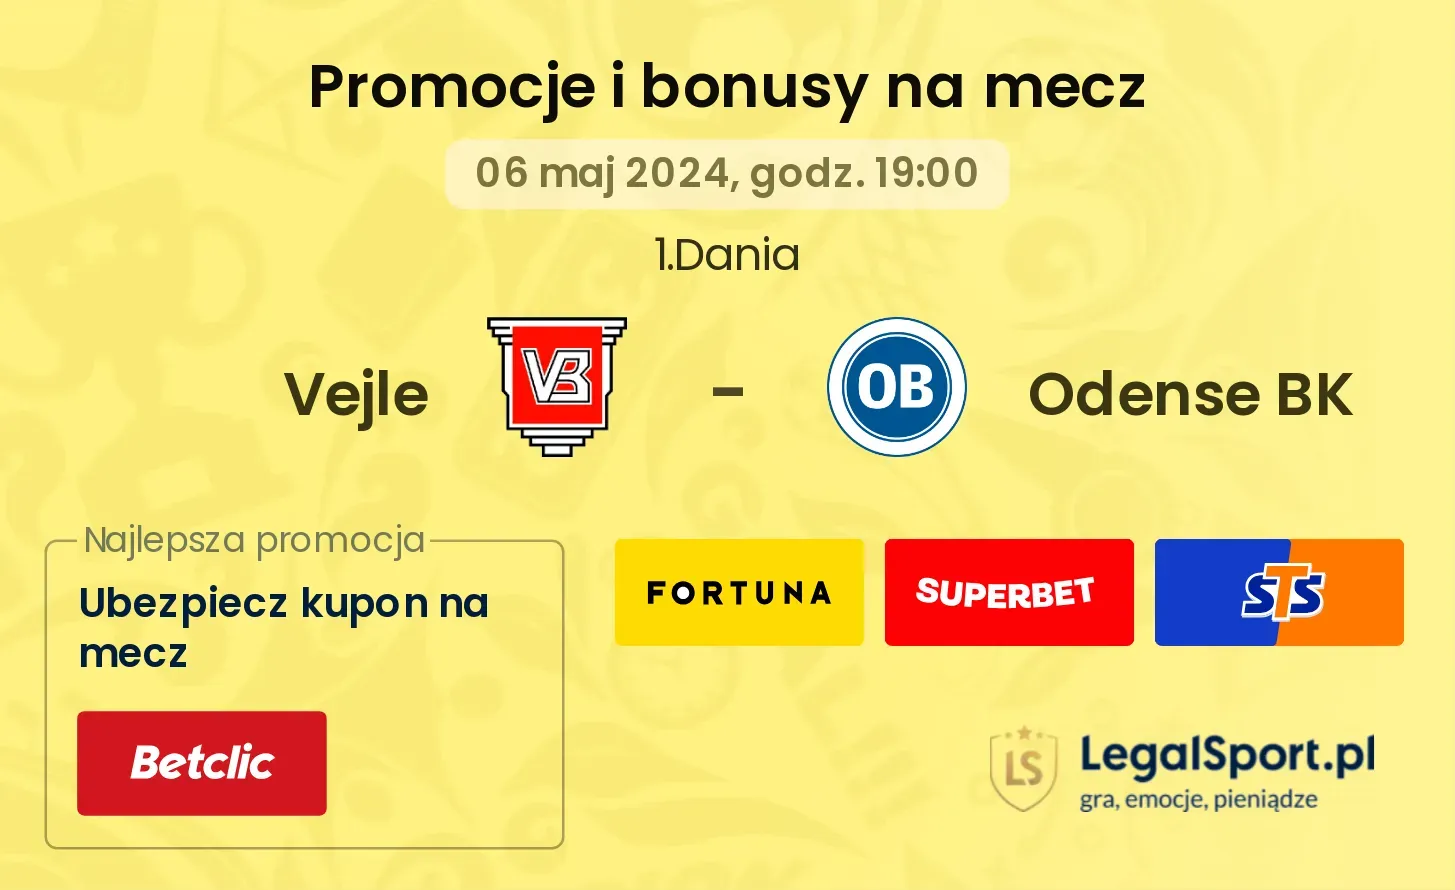 Vejle - Odense BK promocje bonusy na mecz